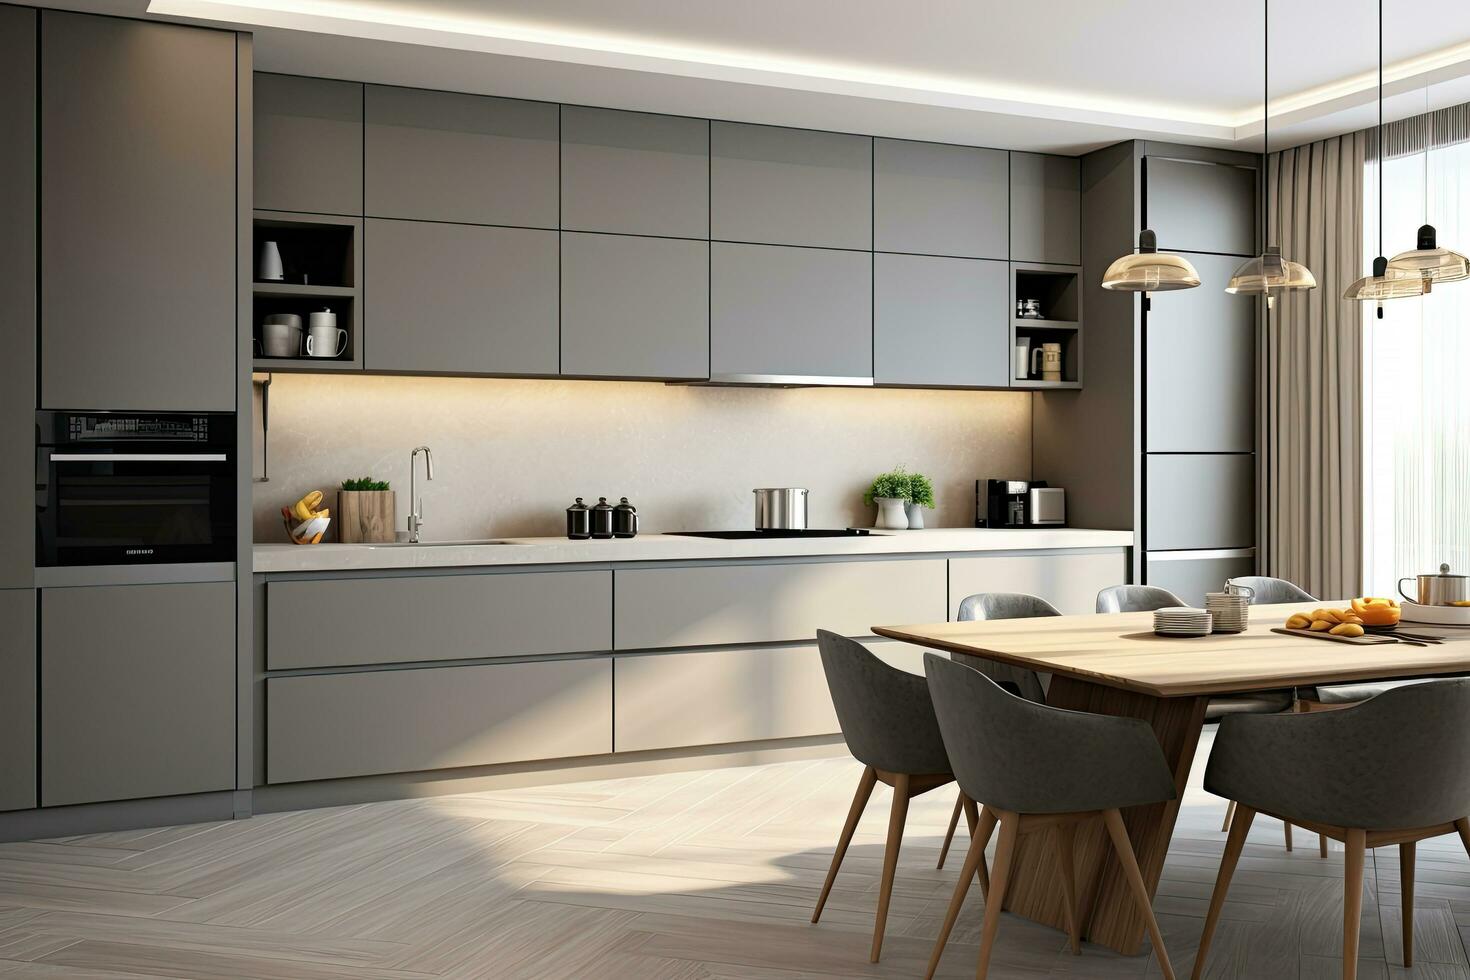 interior do mínimo moderno decoração estilo cozinha com prateleiras, contador Barra e cozinhar zona, casa jantar quarto com contemporâneo Projeto. foto